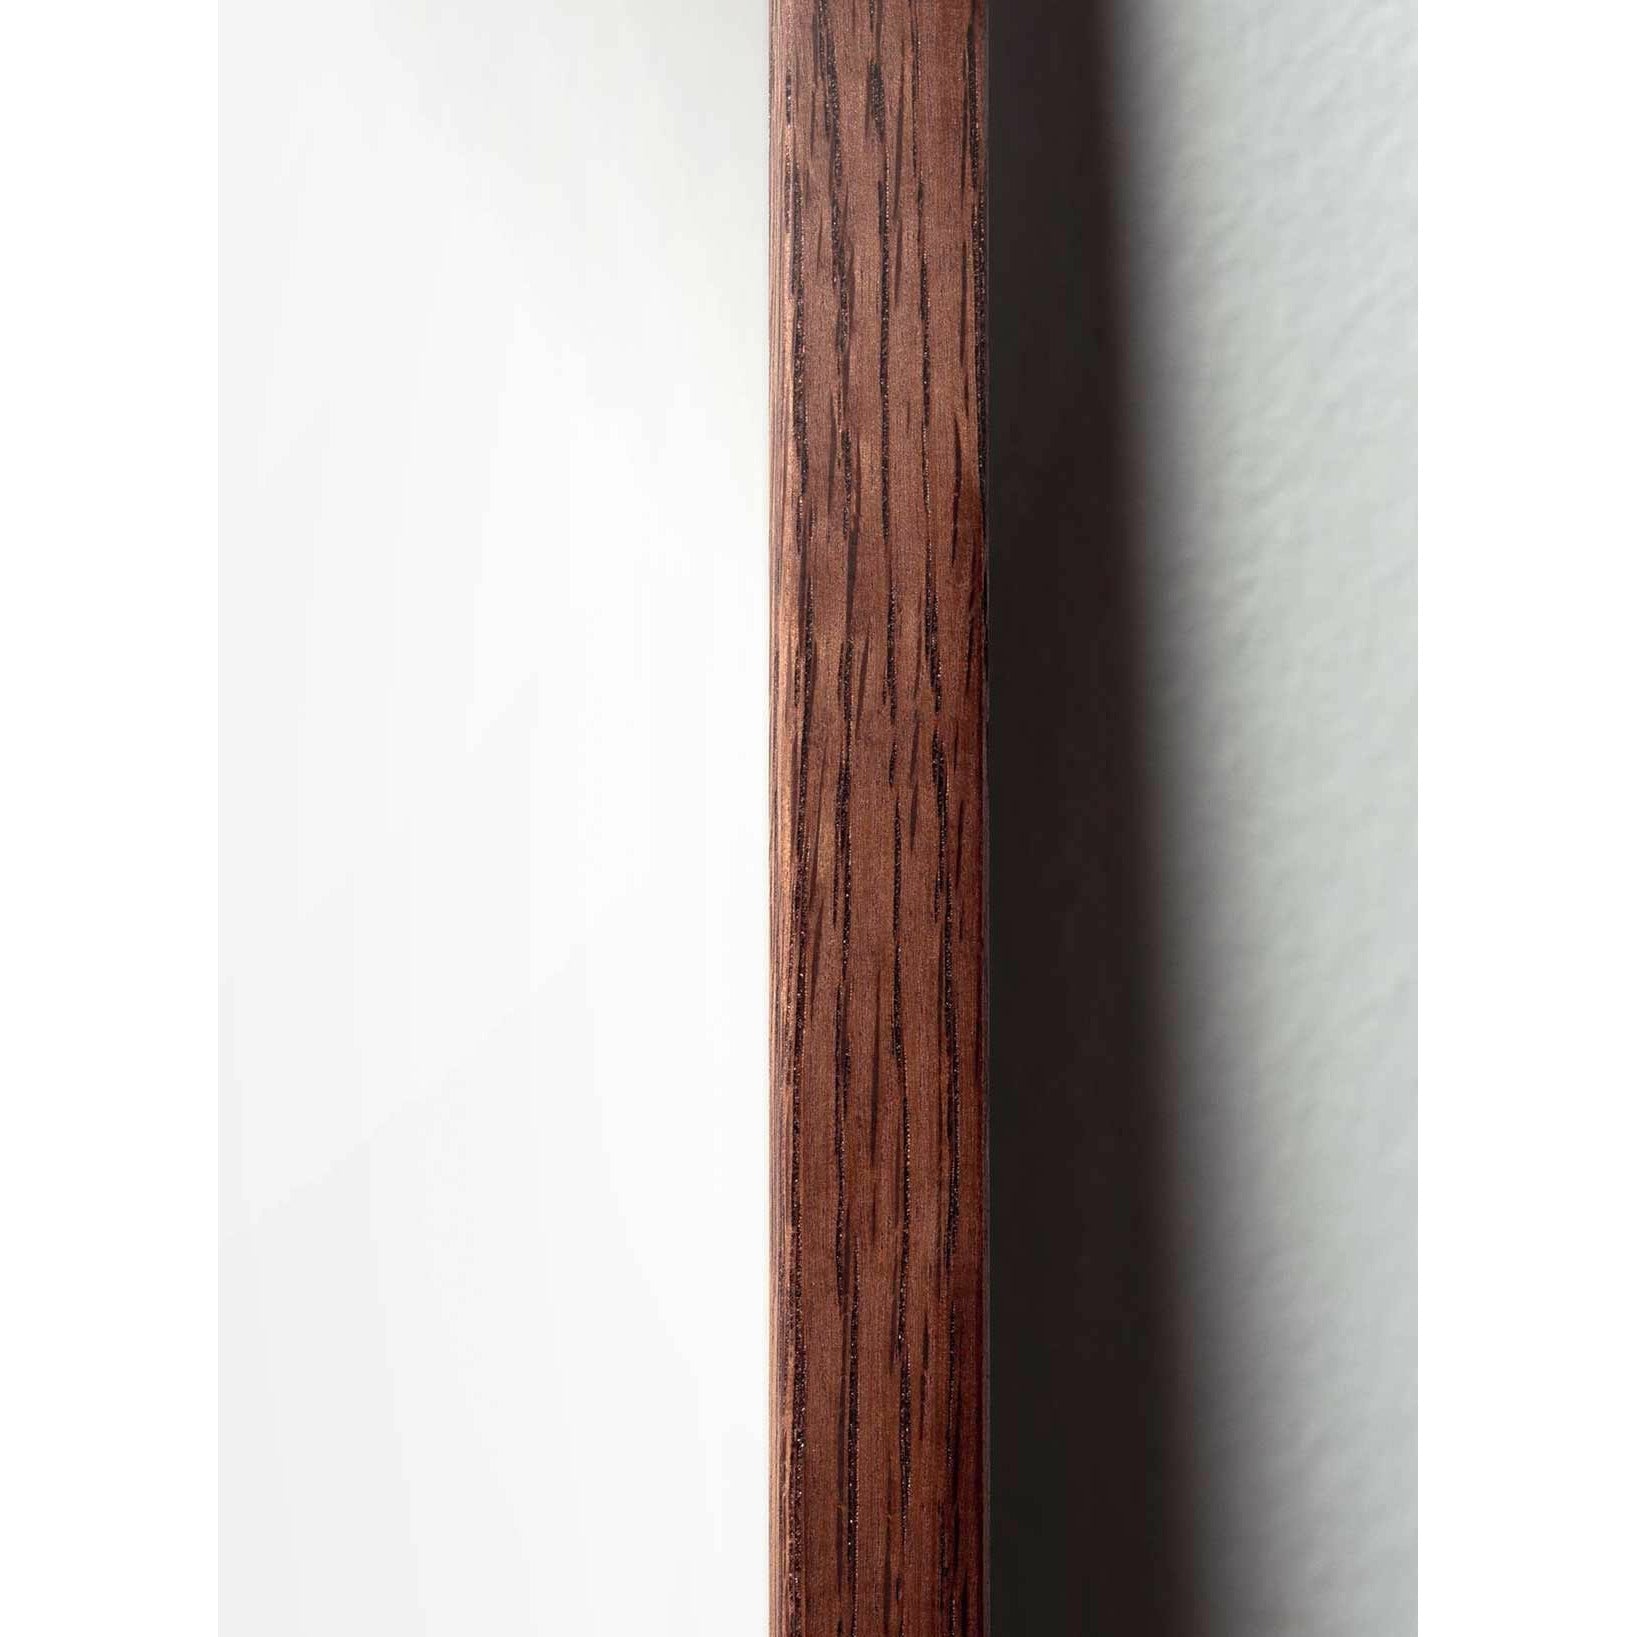 Plakát linky borovice kužele, tmavý dřevěný rám A5, bílé pozadí